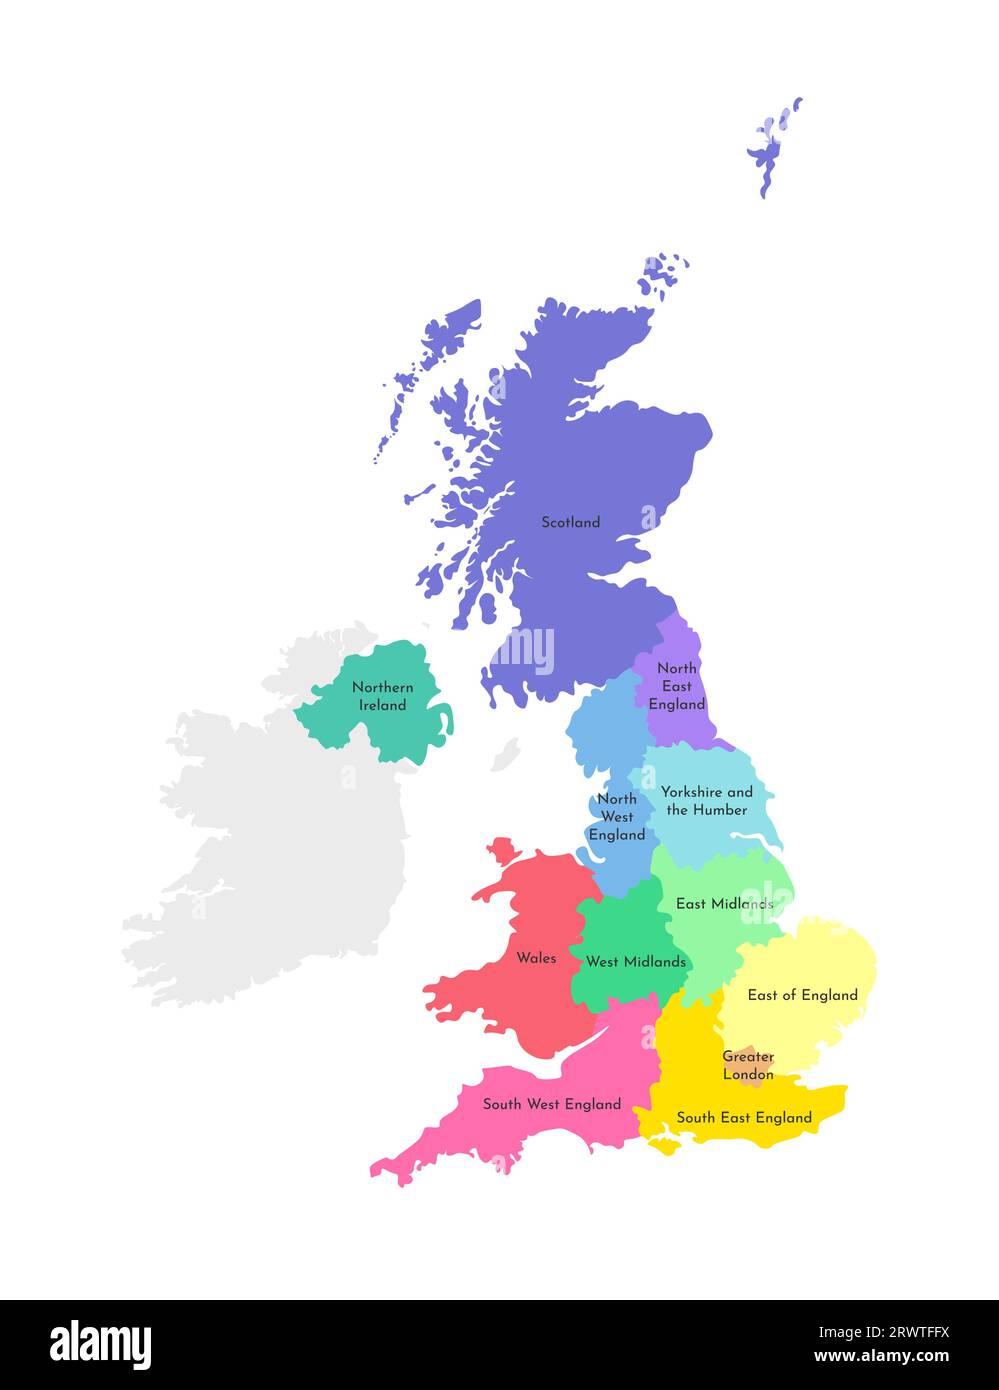 Vektor-isolierte Illustration einer vereinfachten Verwaltungskarte des Vereinigten Königreichs Großbritannien und Nordirland. Rahmen und Namen des Re Stock Vektor